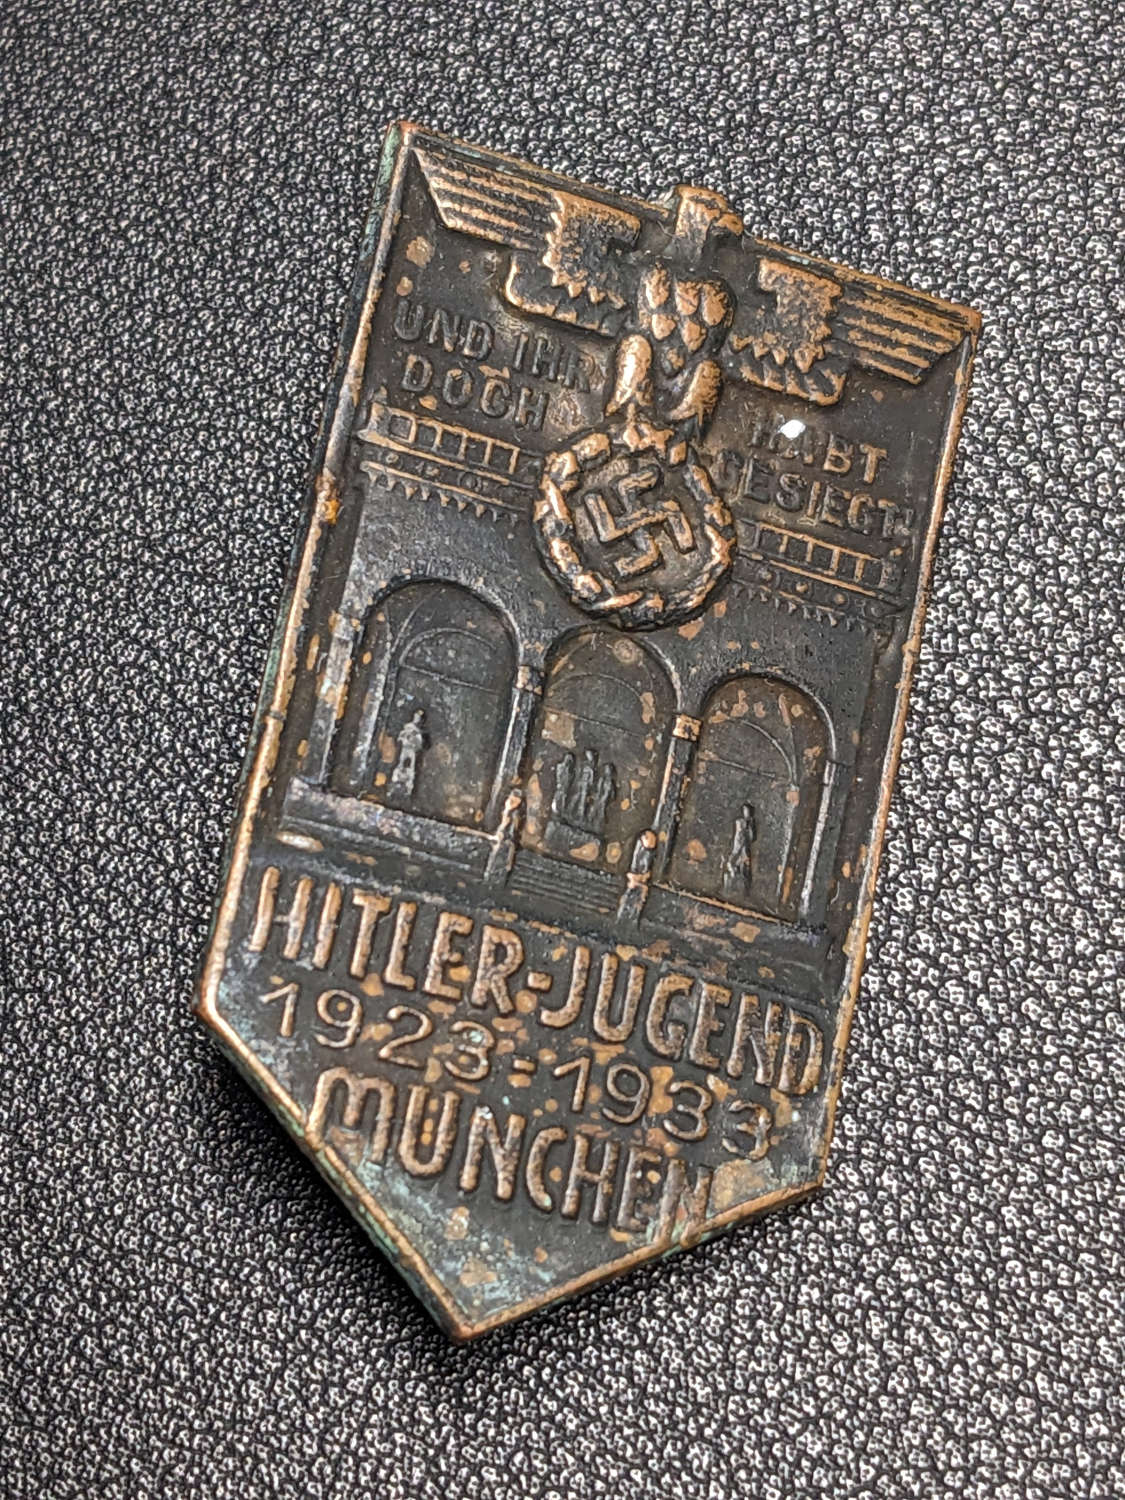 HitlerJugend 1923-33 Munchen Tinnie